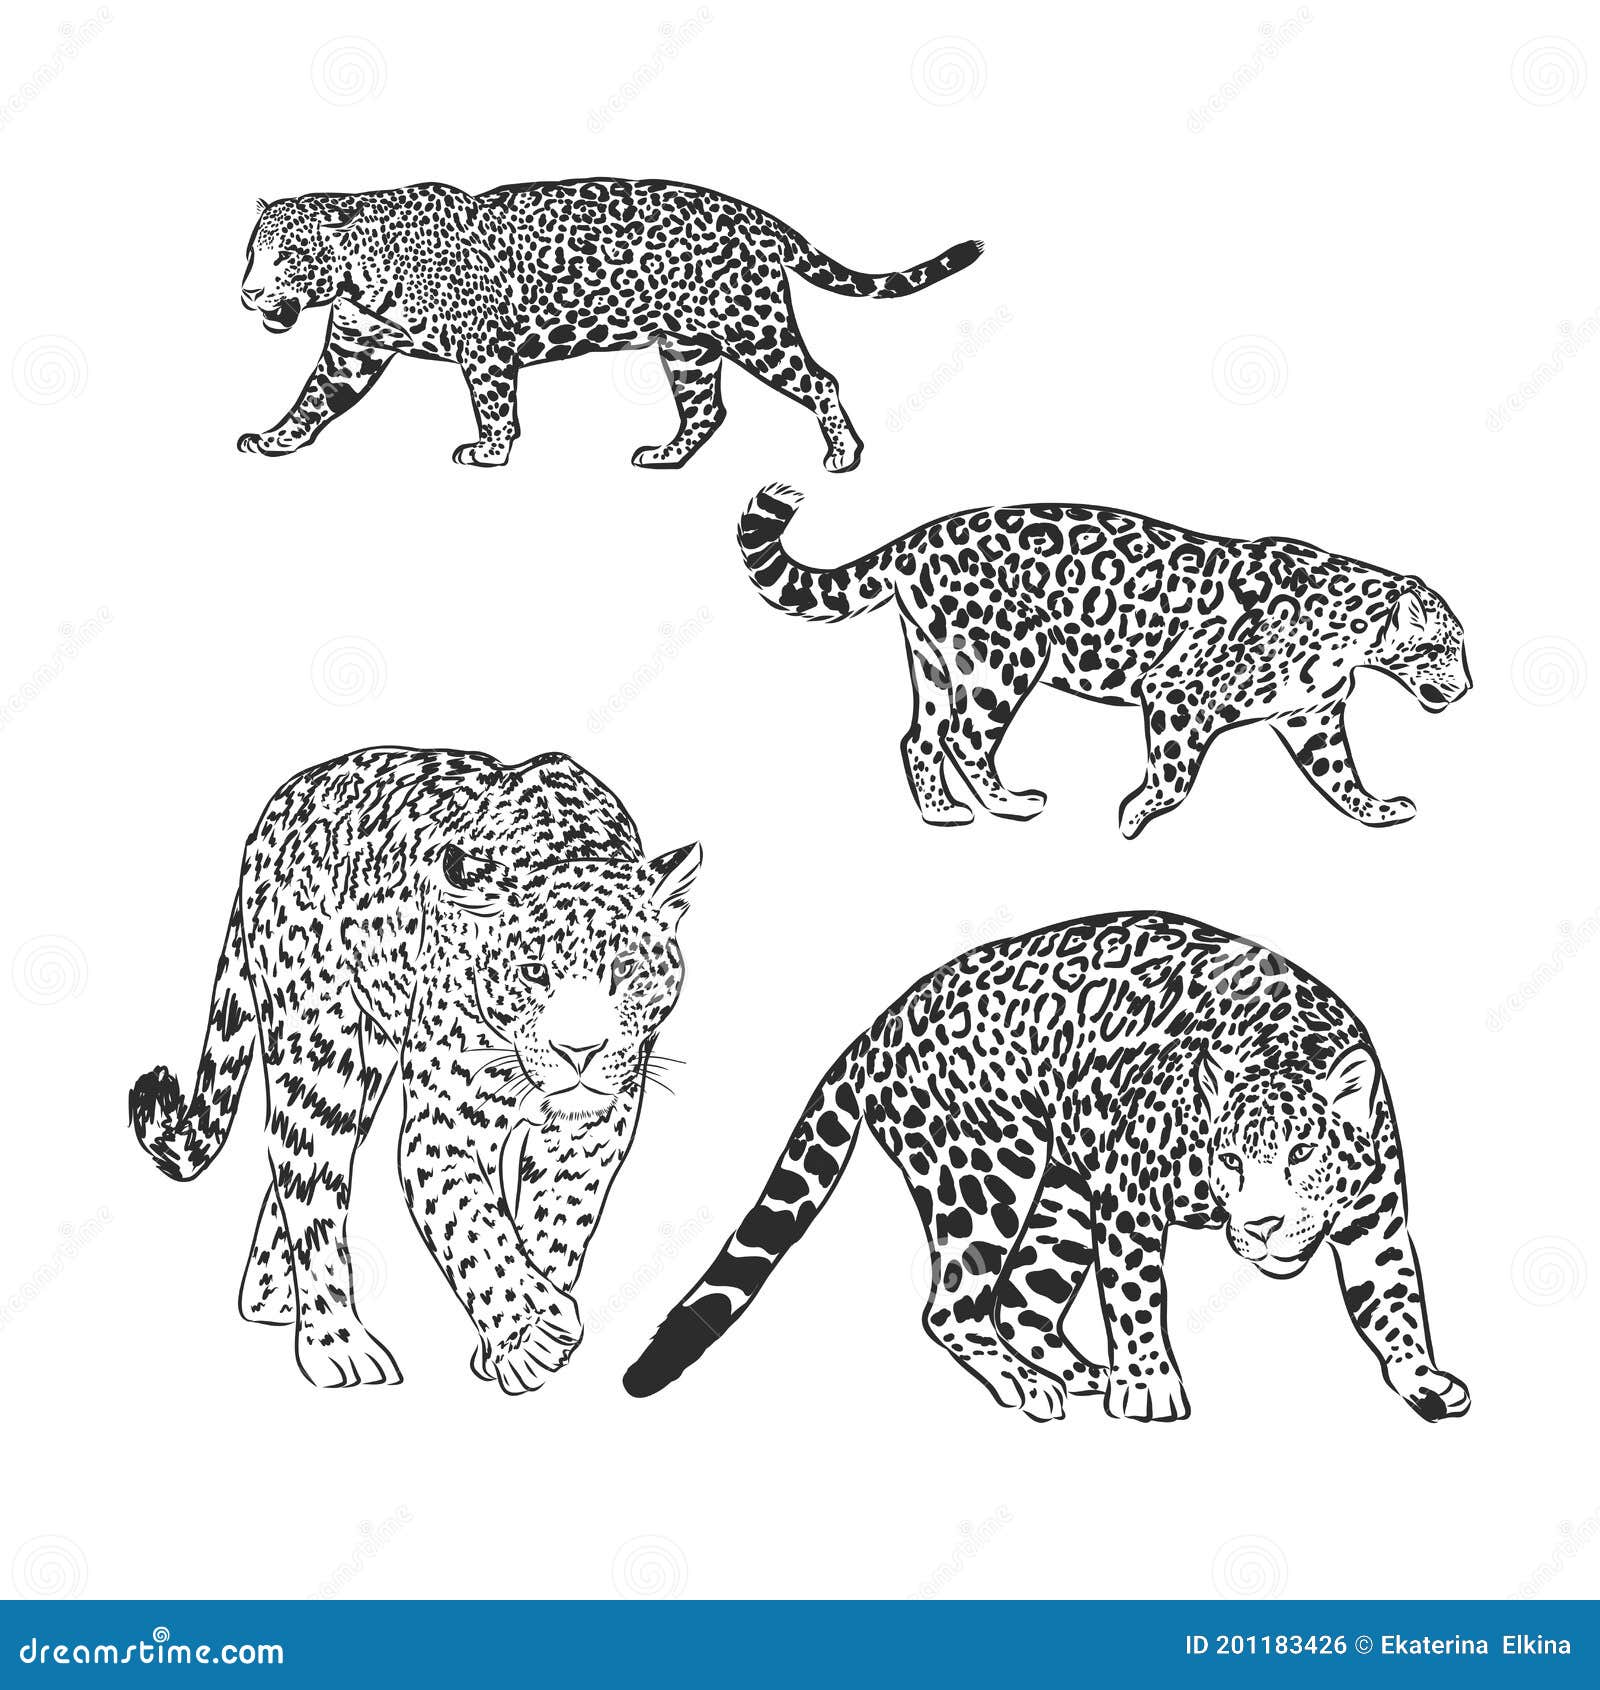 Black and White Vector Sketch of Walks Jaguar. Jaguar Animal Vector Sketch  Illustration Stock Illustration - Illustration of jaguar, leopard: 201183426